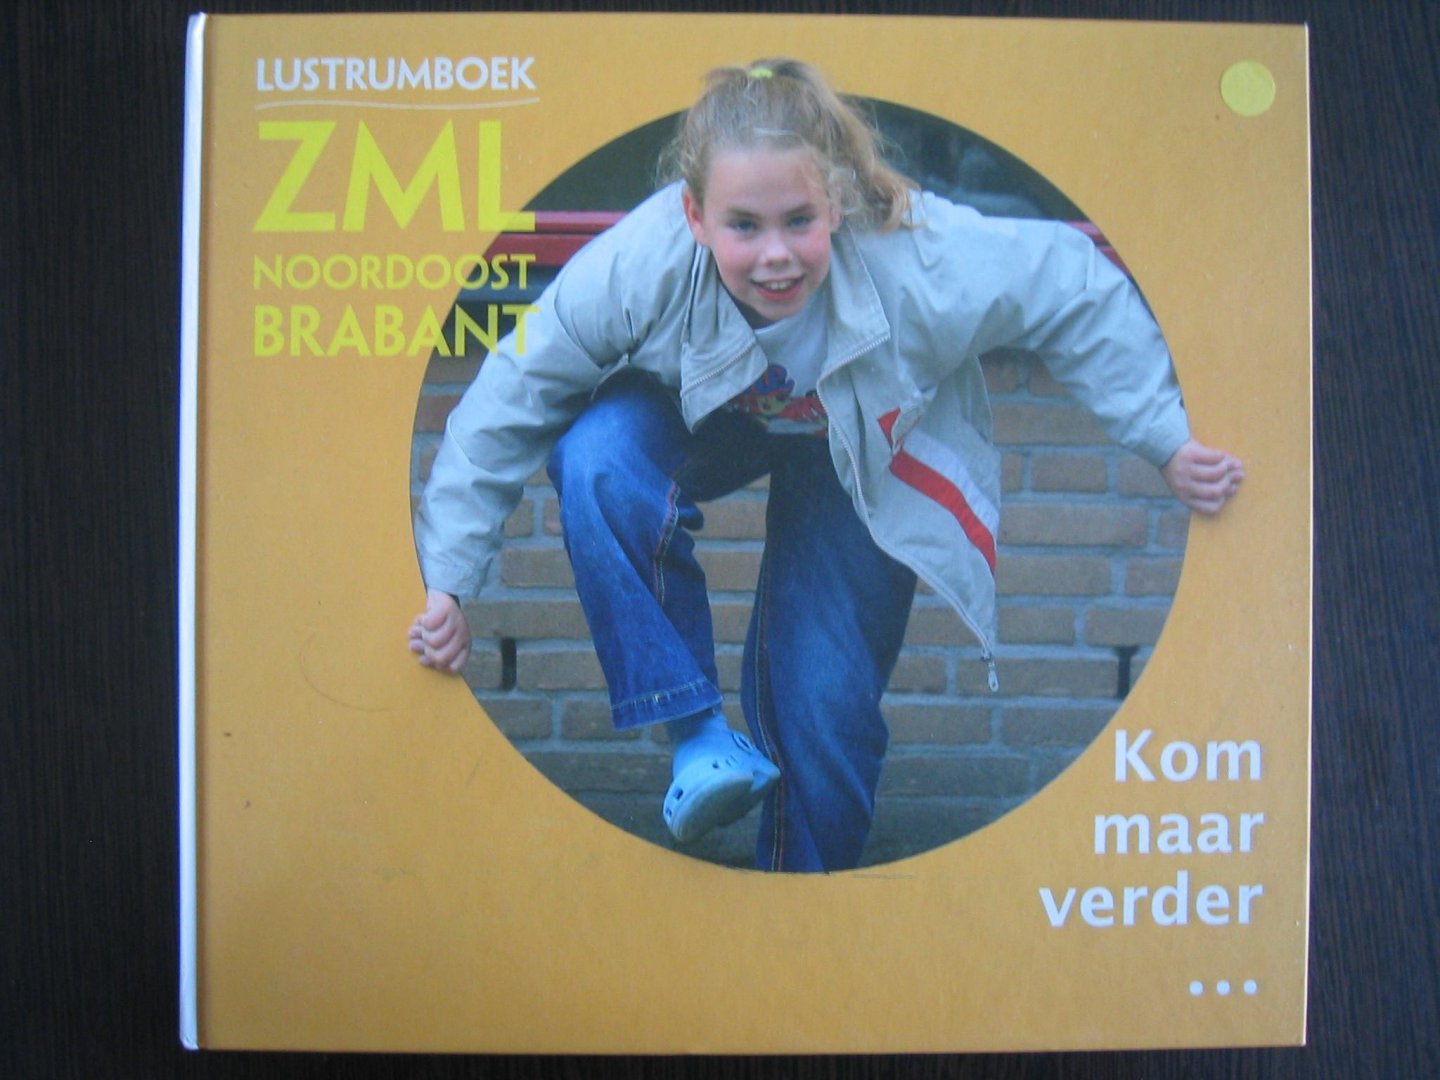 Ernst Bergboer - Lustrumboek ZML Noordoost Brabant - Kom maar verder....